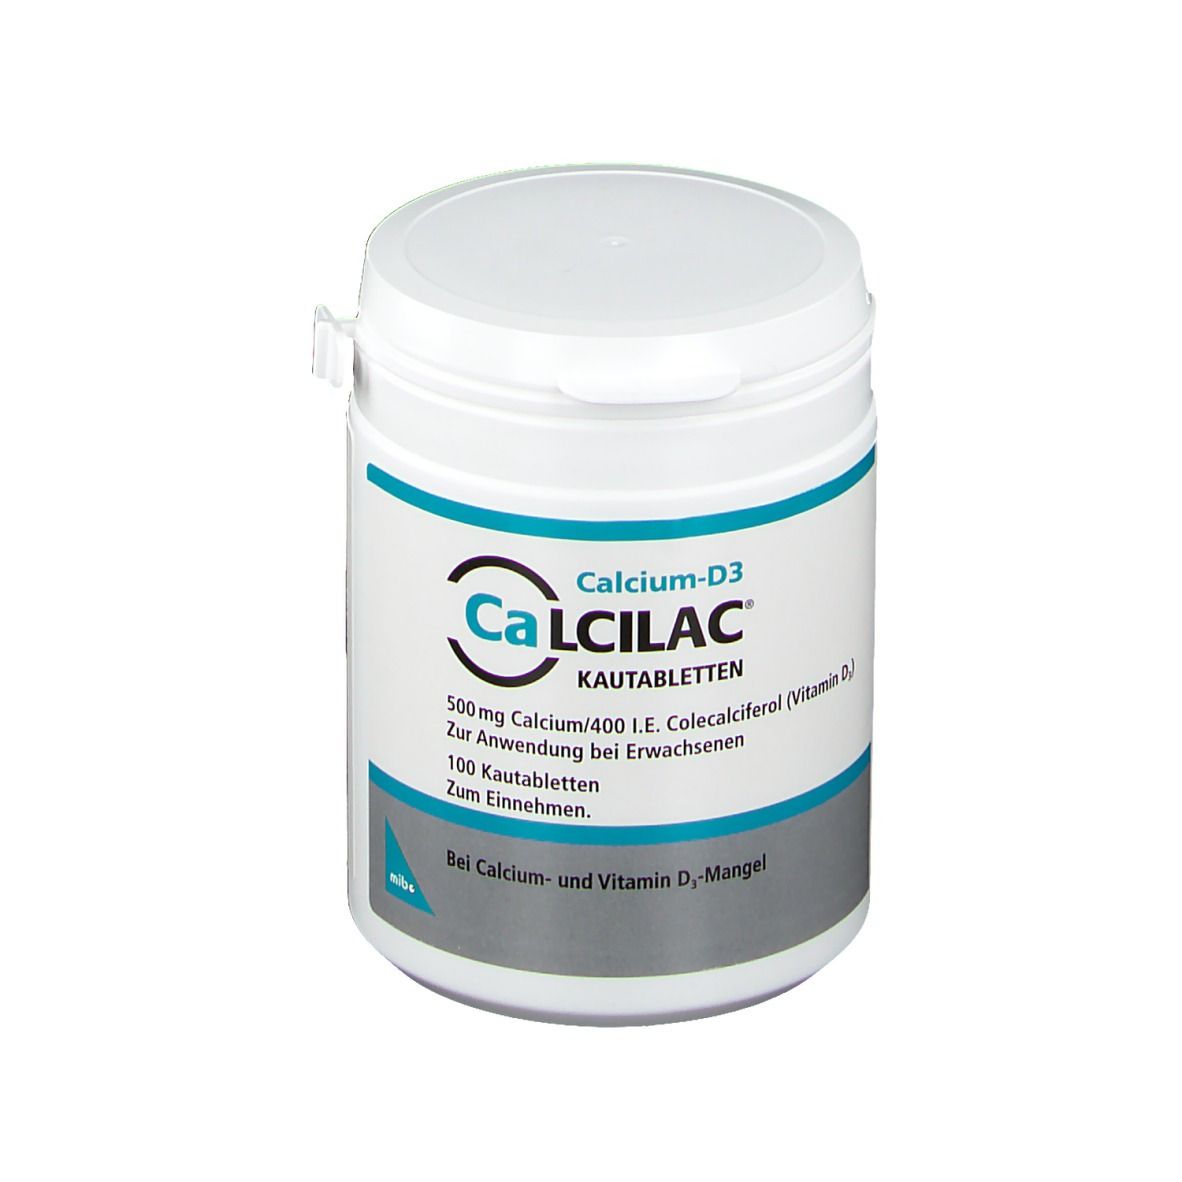 Calcilac® Kautabletten 500 mg/400 I.e.